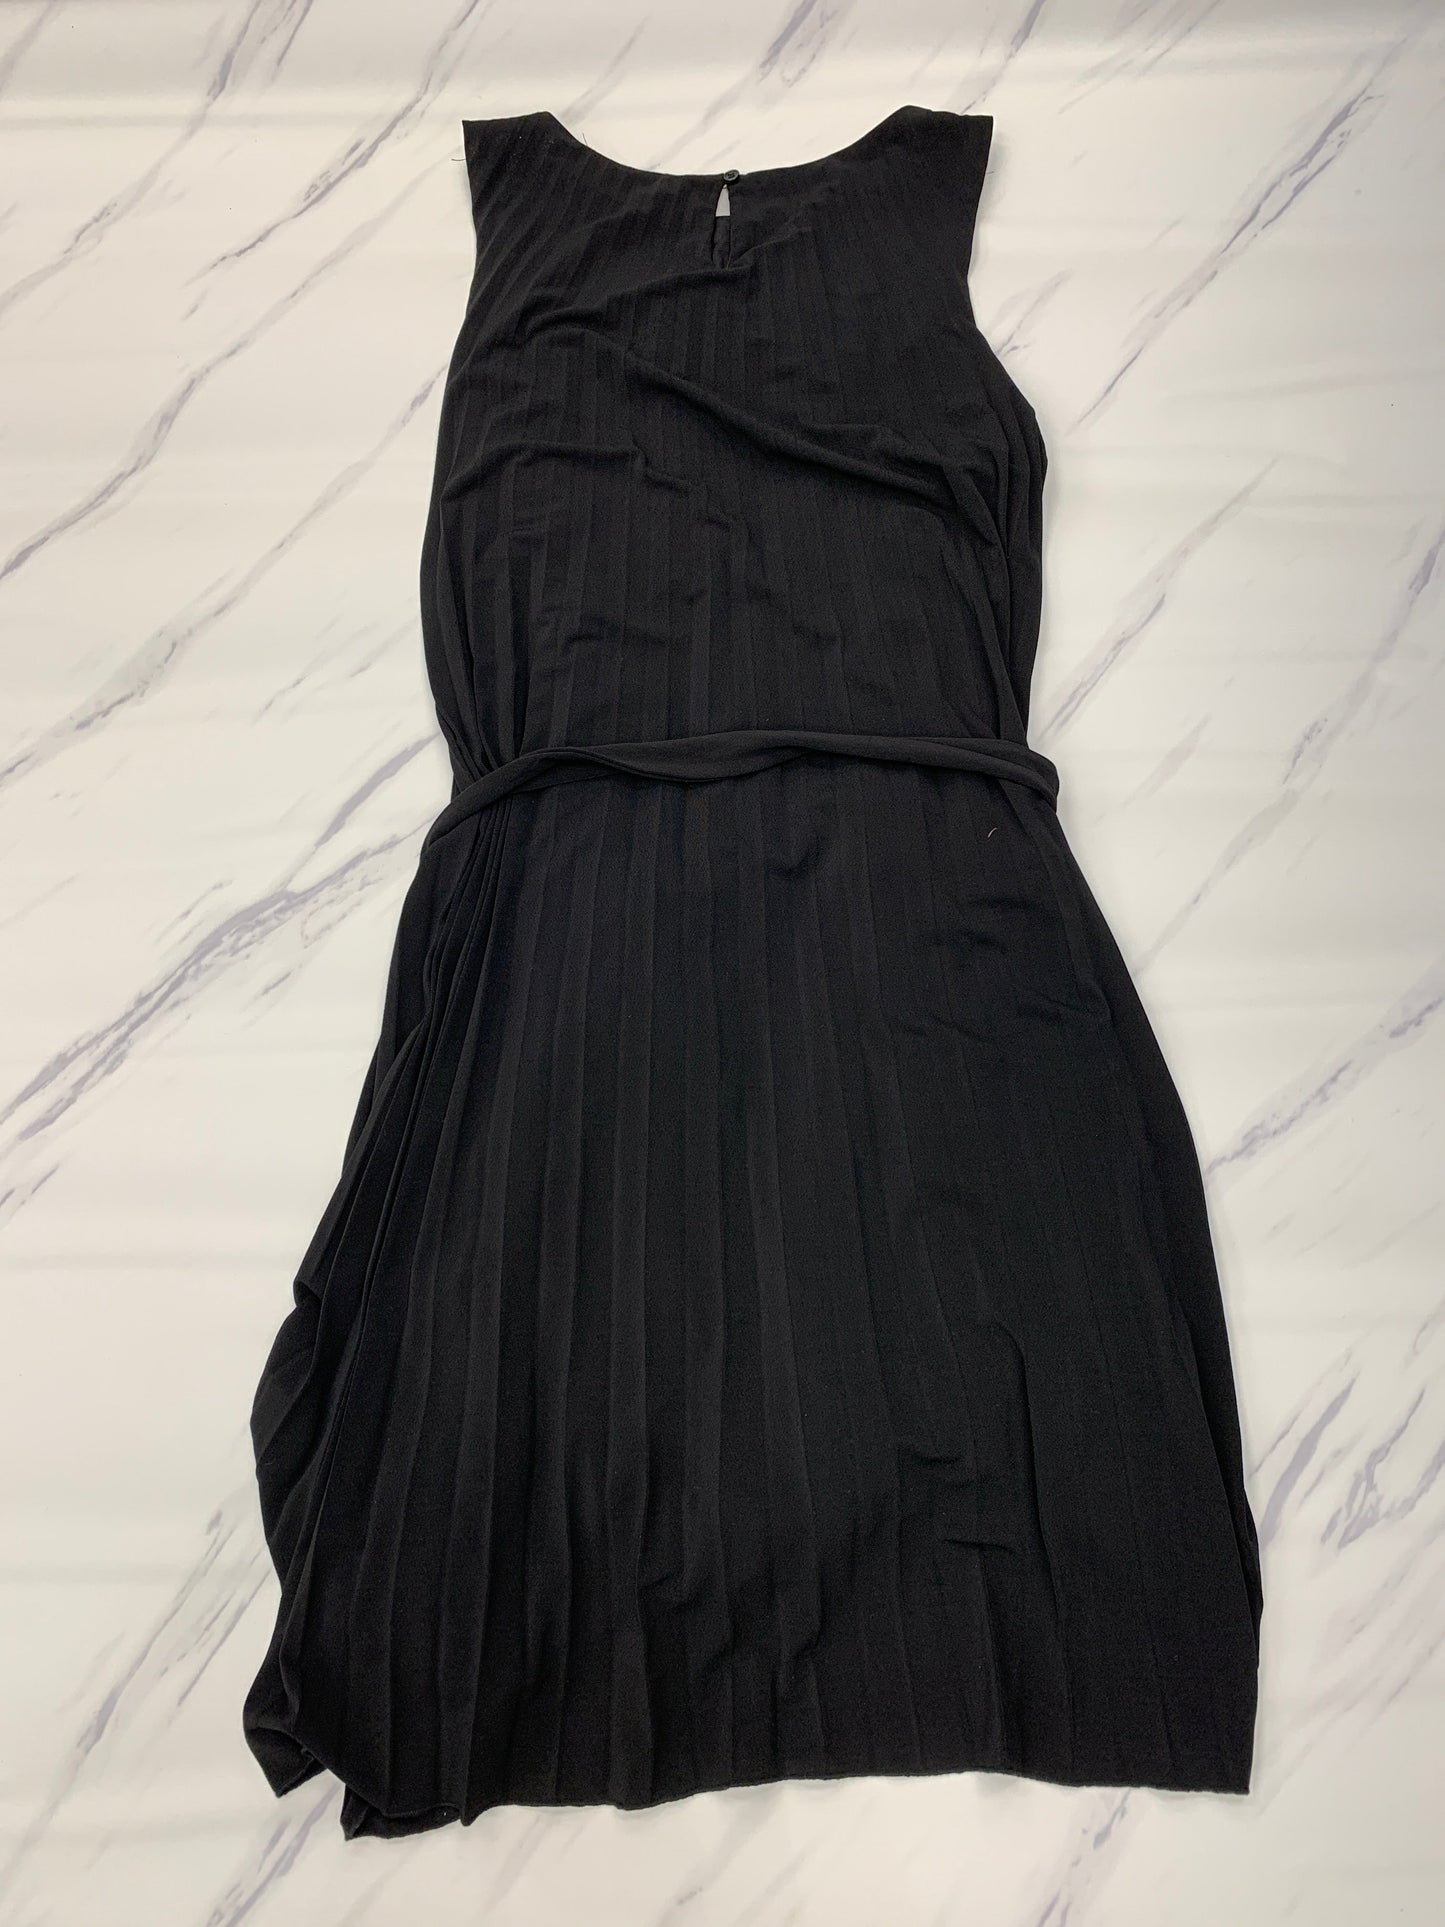 Dress Casual Midi By T Tahari  Size: Xl